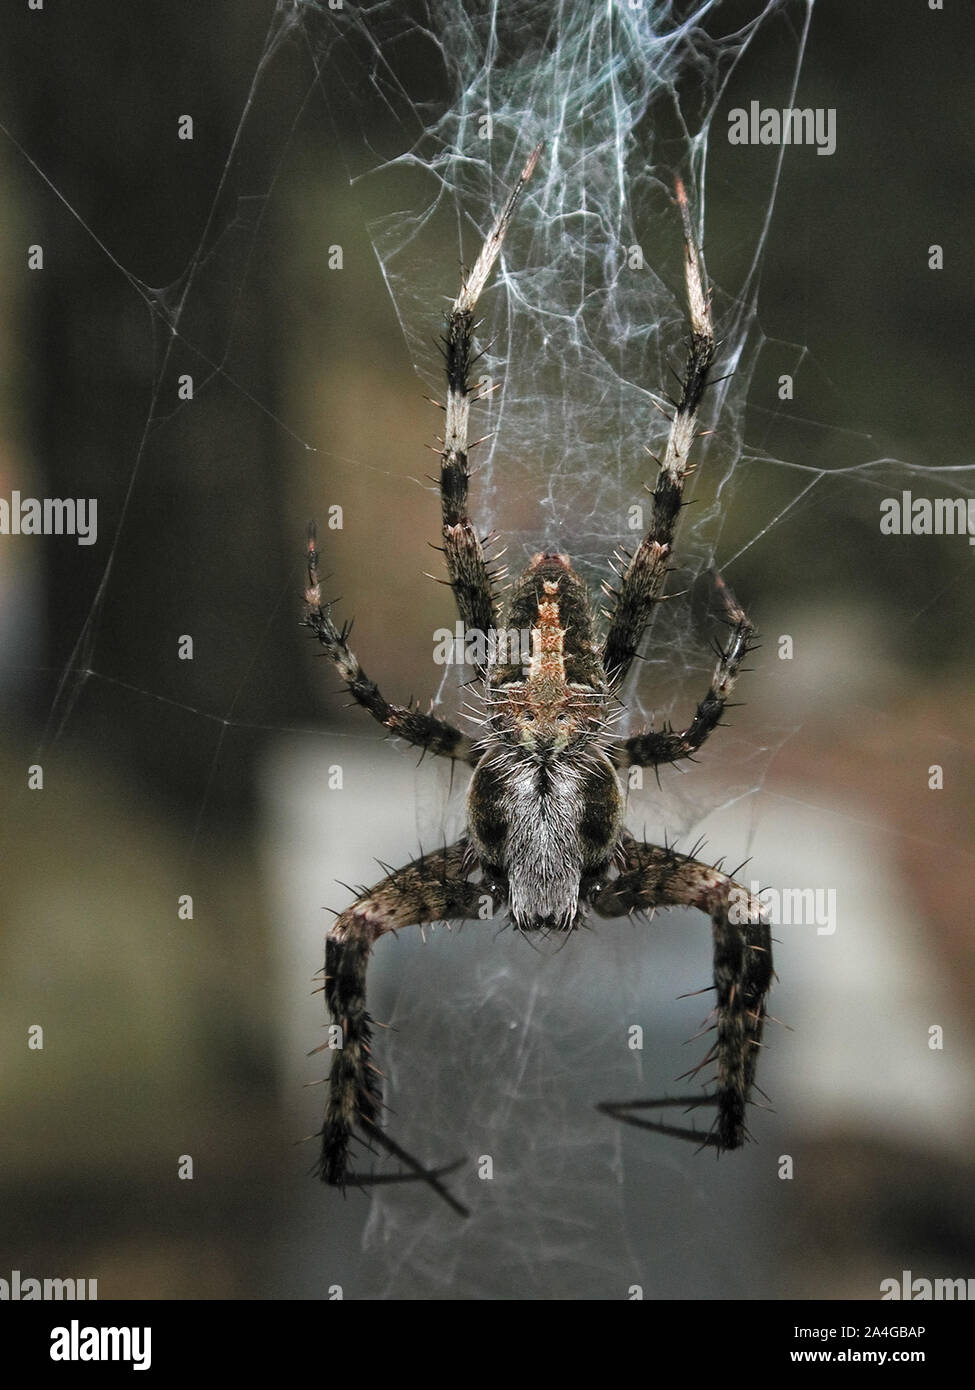 Grand big hairy repéré orbweaver arachnide araignée web nature plein air Ft. Floride blanc Banque D'Images